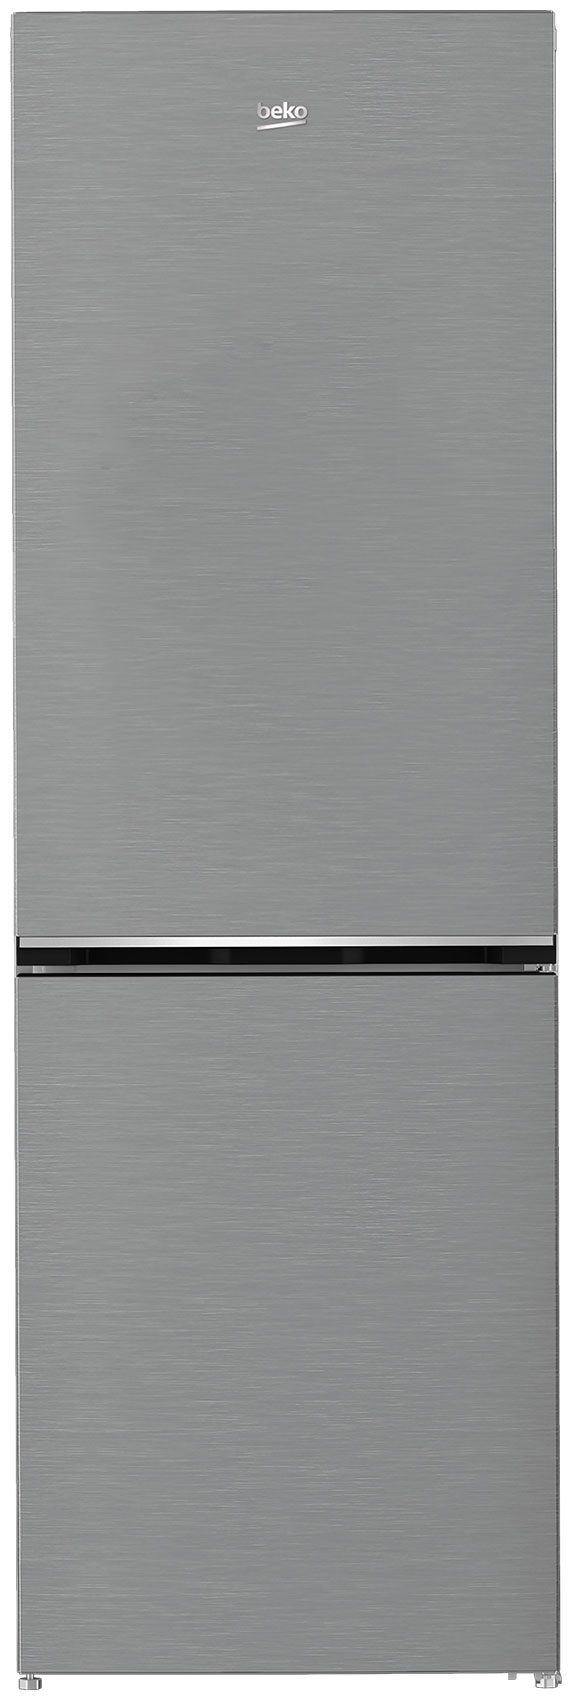 Двухкамерный холодильник Beko B1DRCNK362HX холодильник двухкамерный beko dsmv5280ma0s серебристый